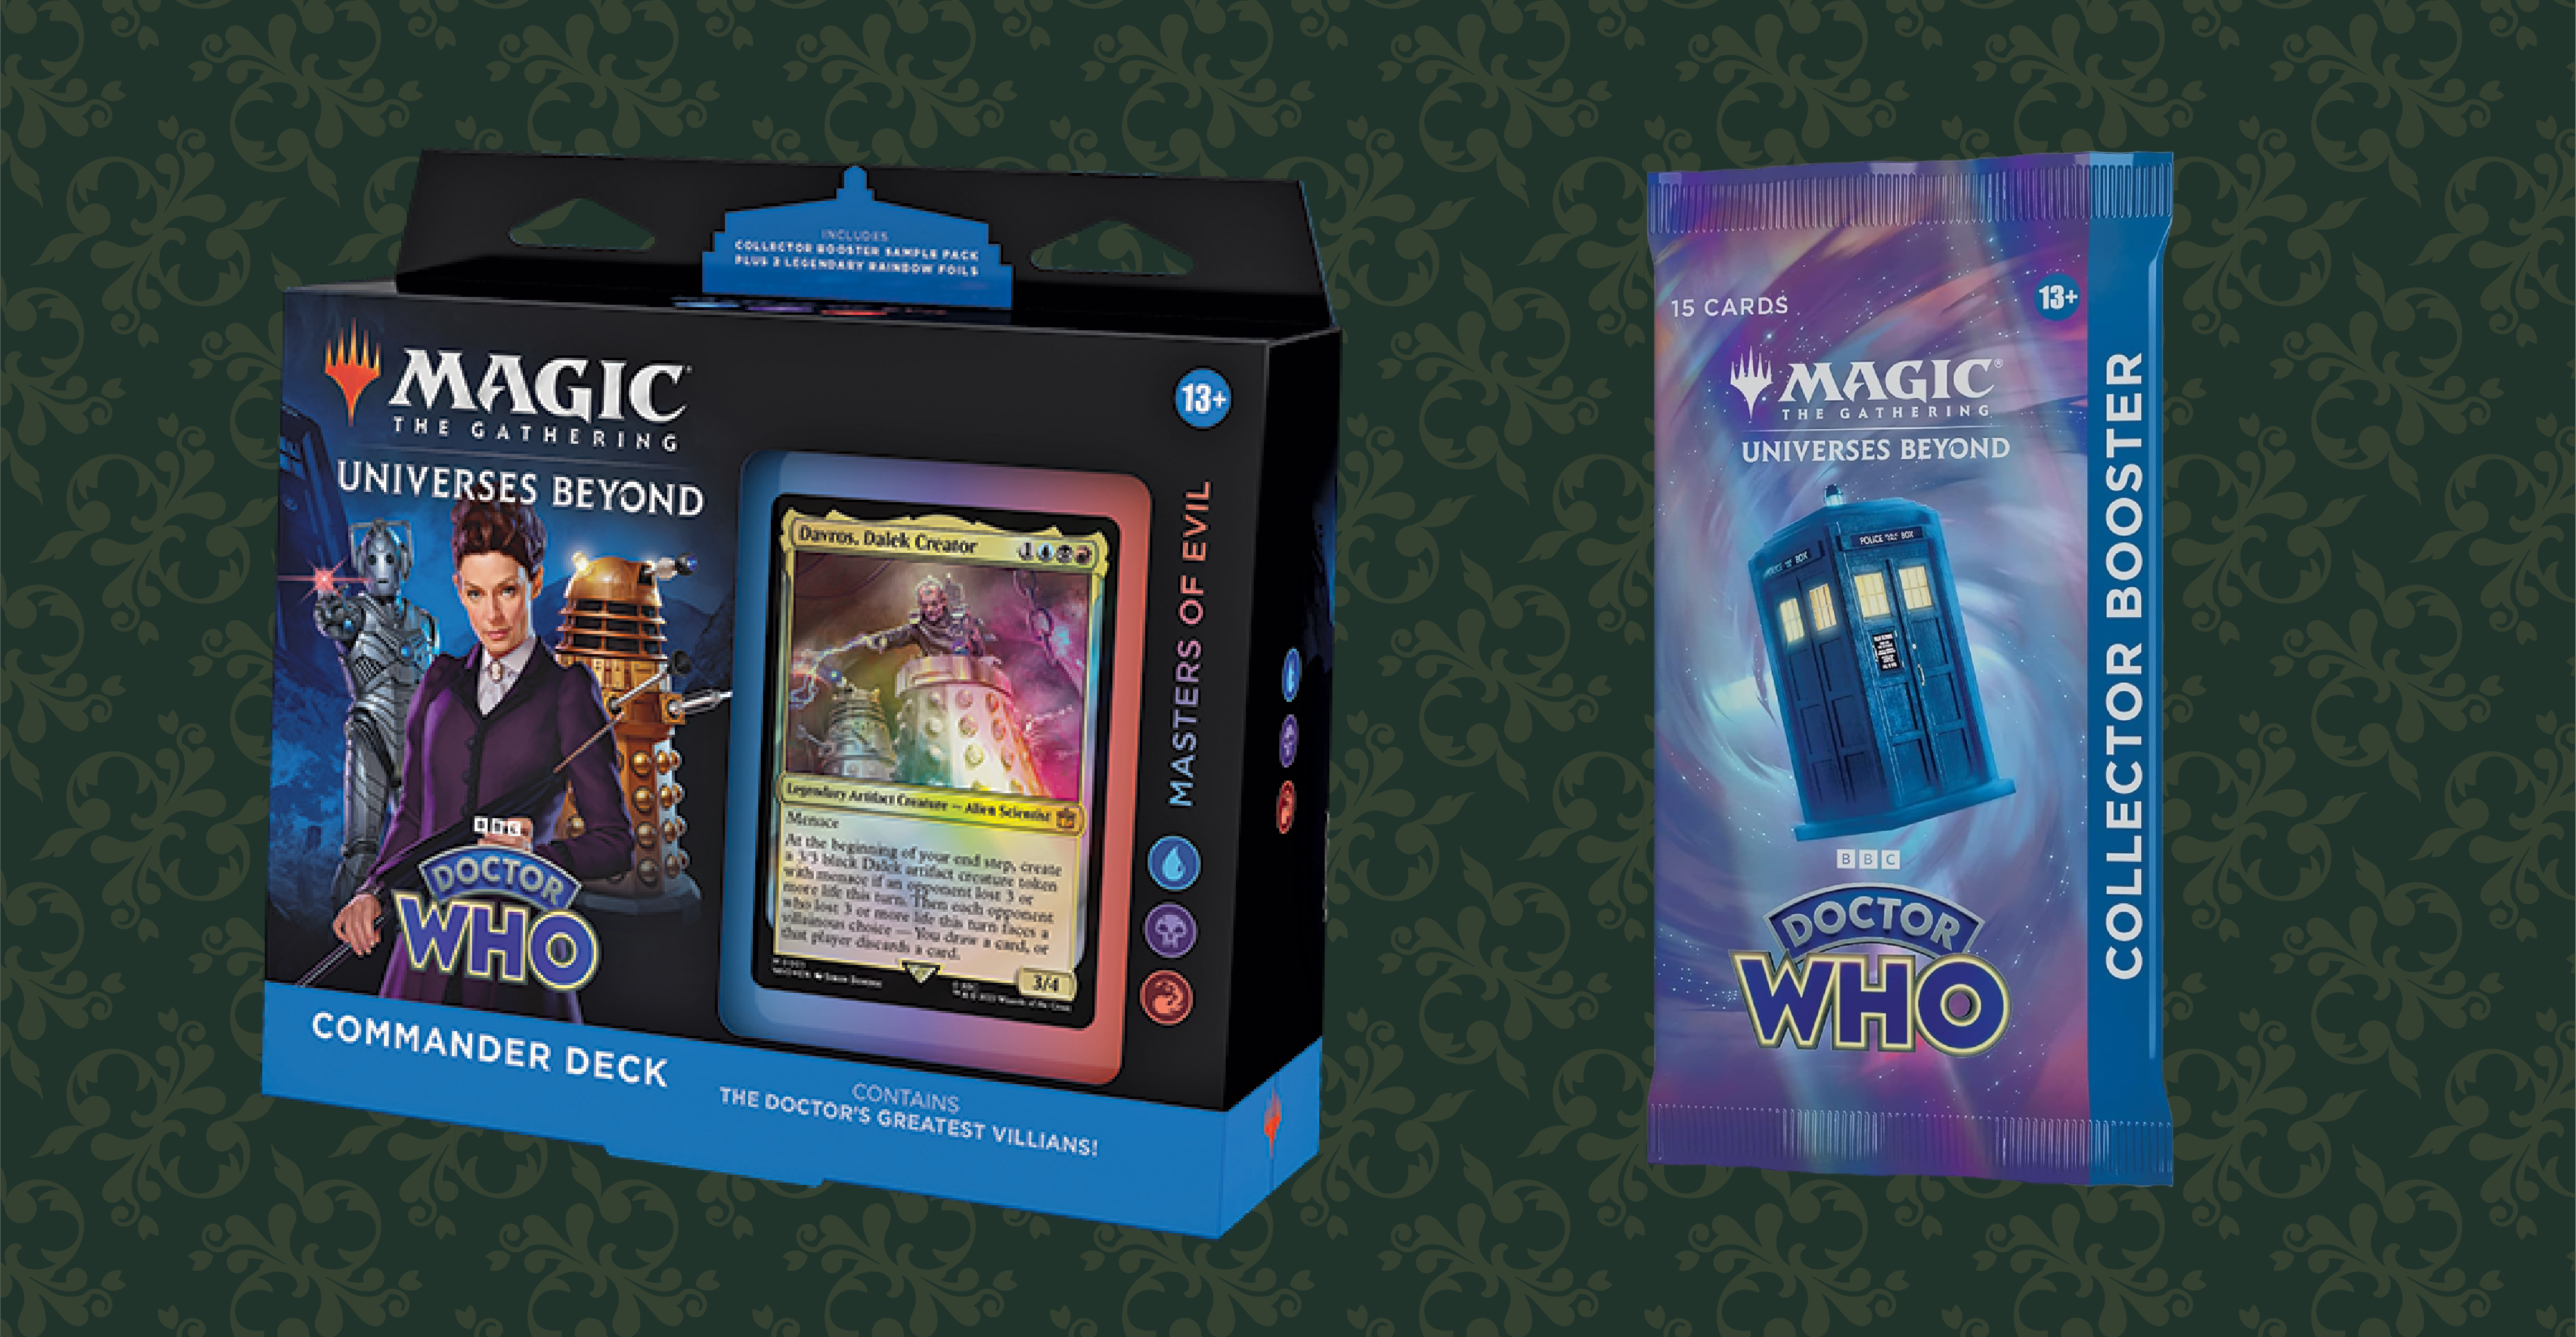 Magic et la collaboration avec Doctor Who